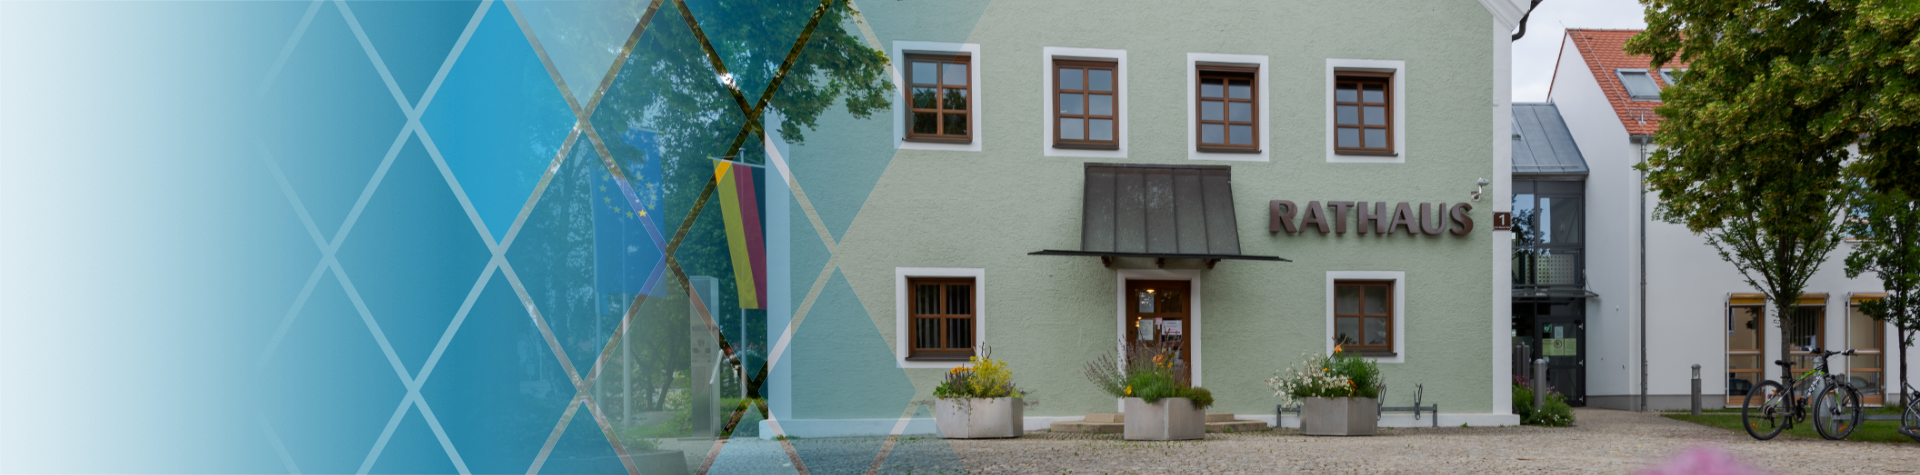 Demografieleitfaden Kopfbild Kommunen - Frontalansicht des Rathauses einer kleineren bayerischen Kommune mit dem Schriftzug 'Rathaus' neben dem Eingang